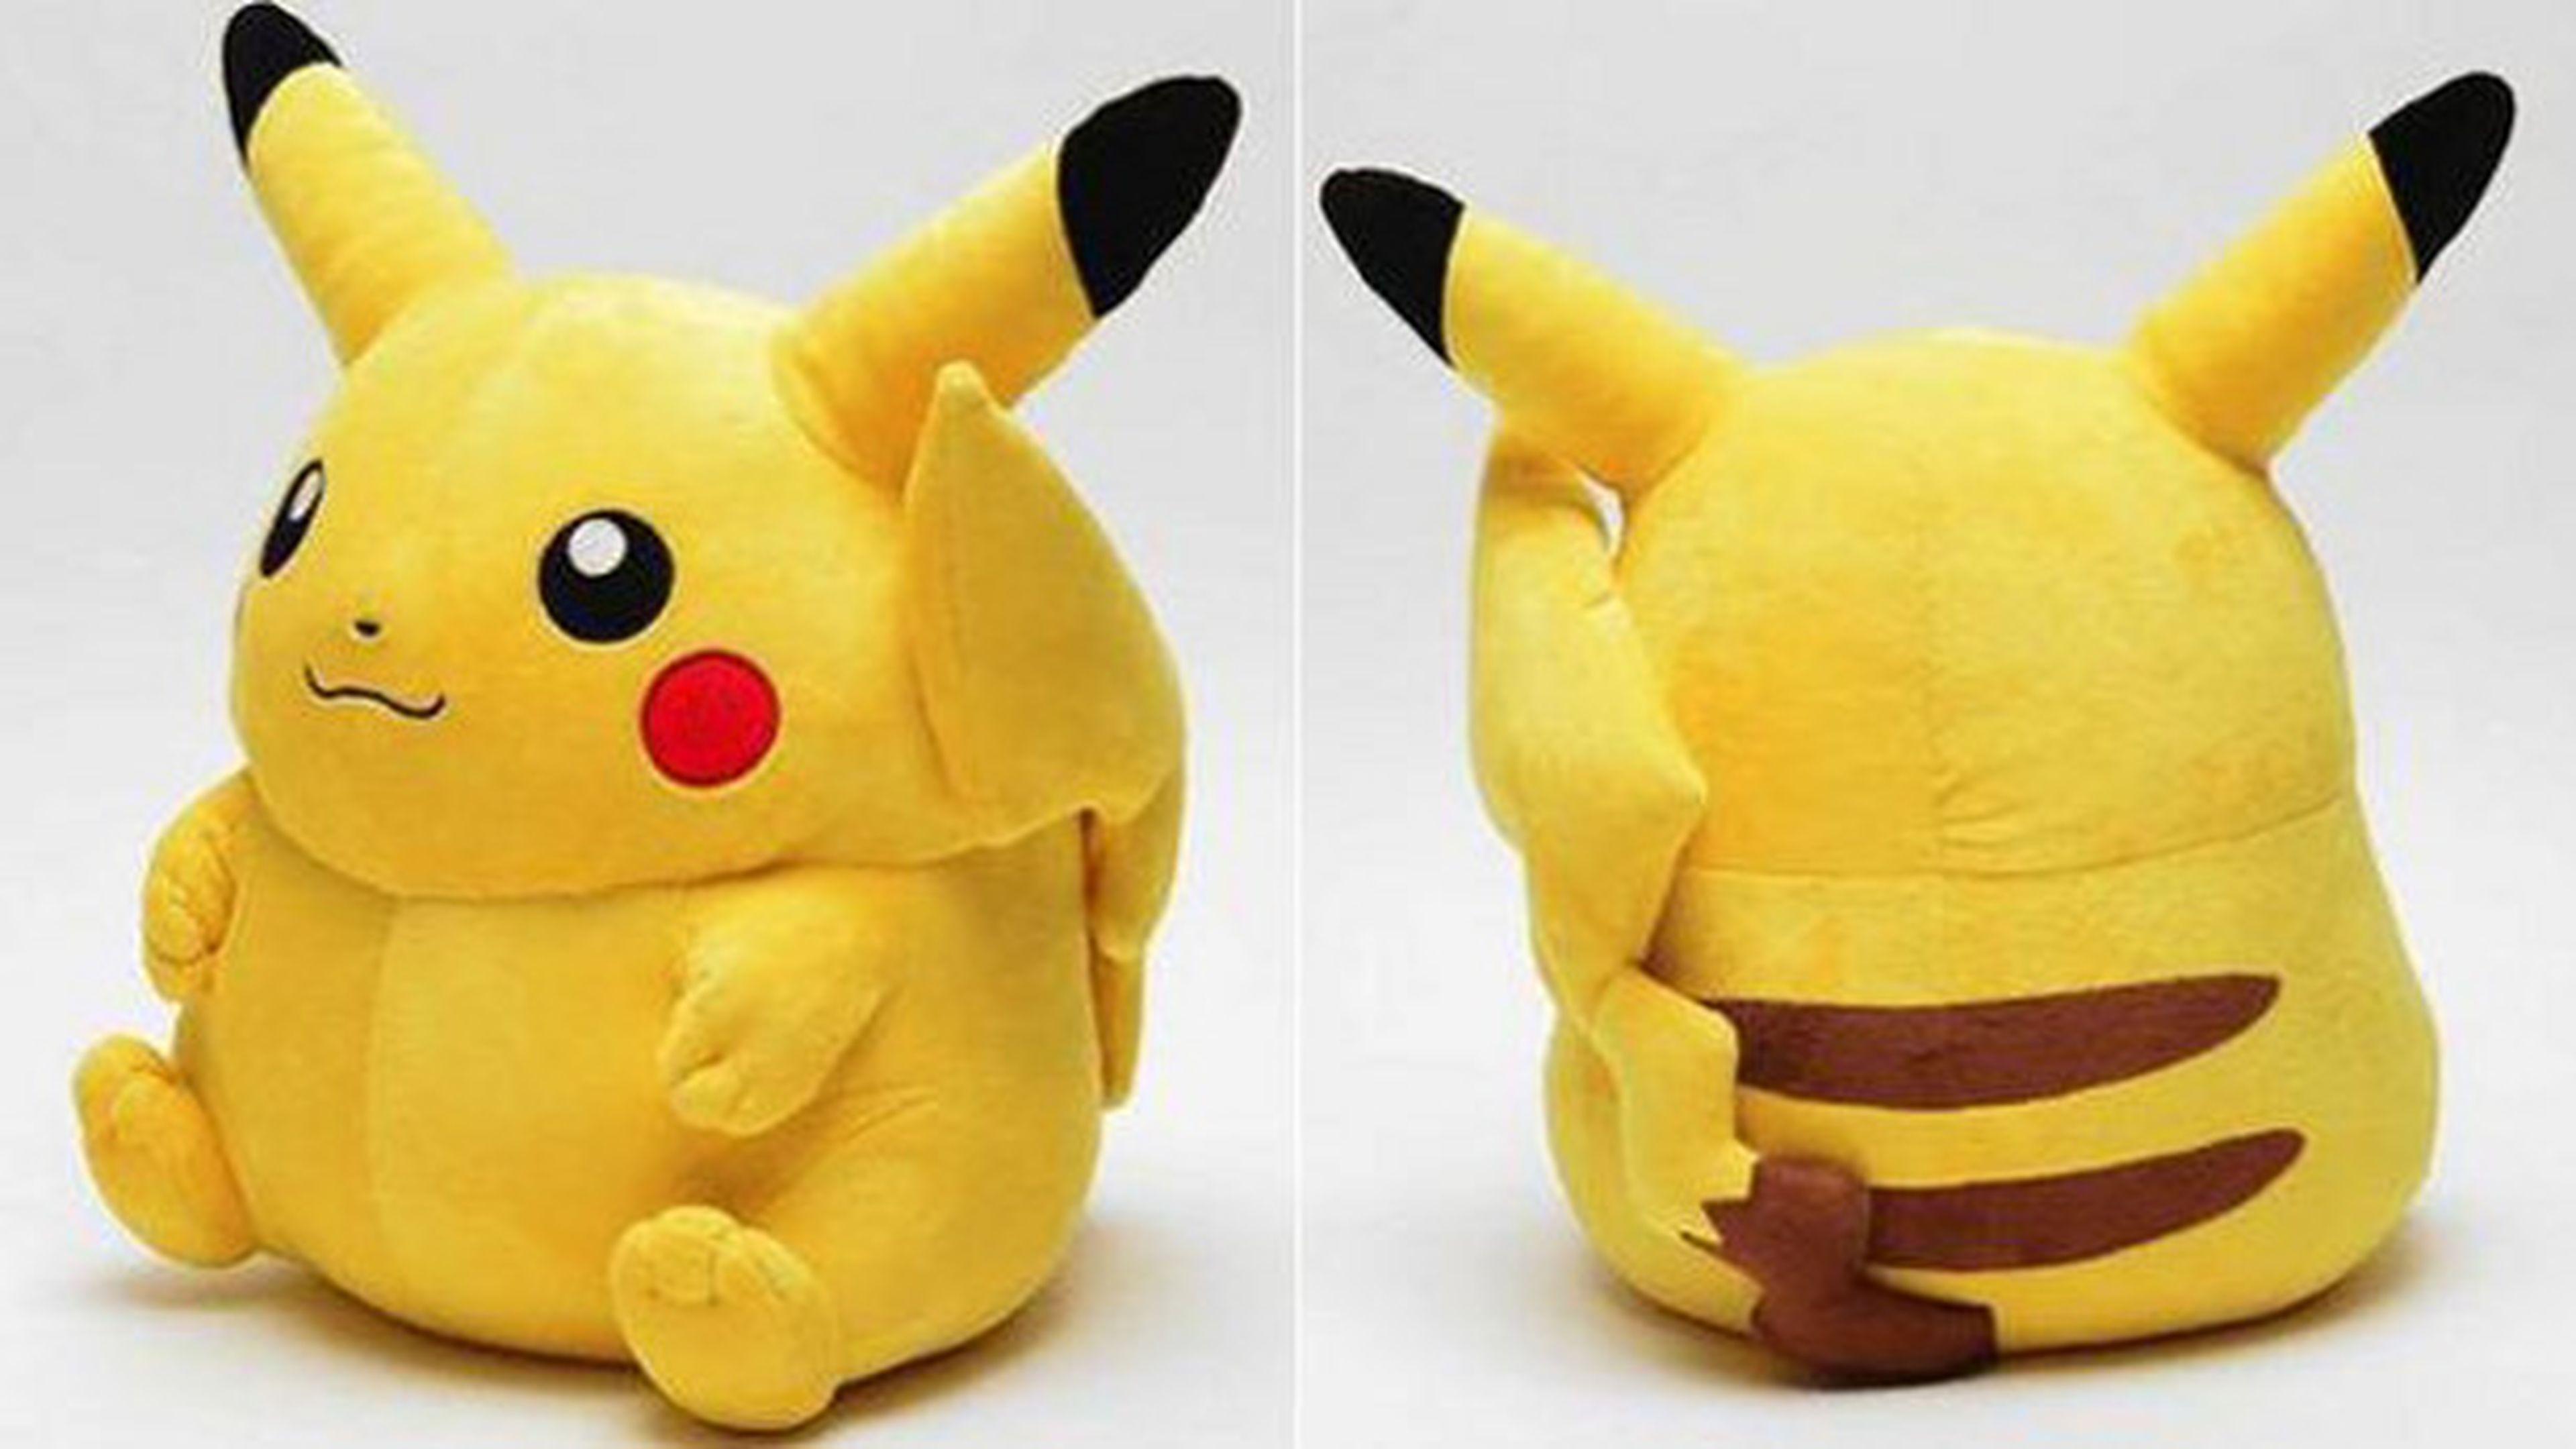 Sale a la venta un Pikachu de tamaño real